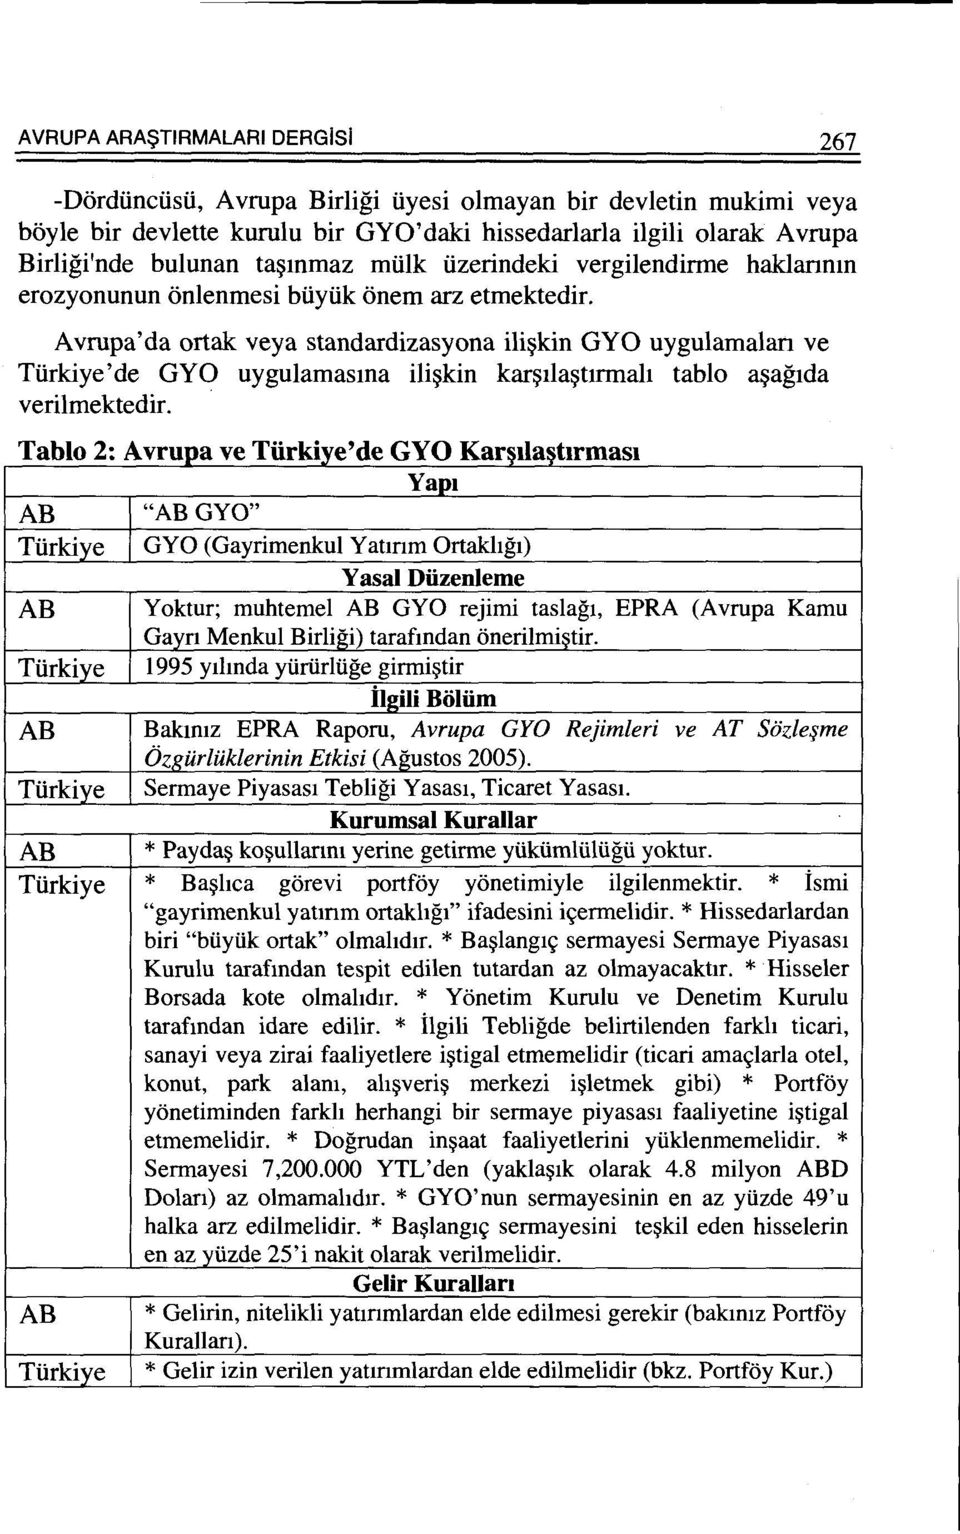 Avrupa'da ortak veya standardizasyona ili~kin GYO uygulamalan ve Tiirkiye'de GYO uygulamasma ili~kin kar~ila~ttrmah tablo a~agtda verilmektedir.. T bl 2 A r k" 'd GYO K I t a 0.